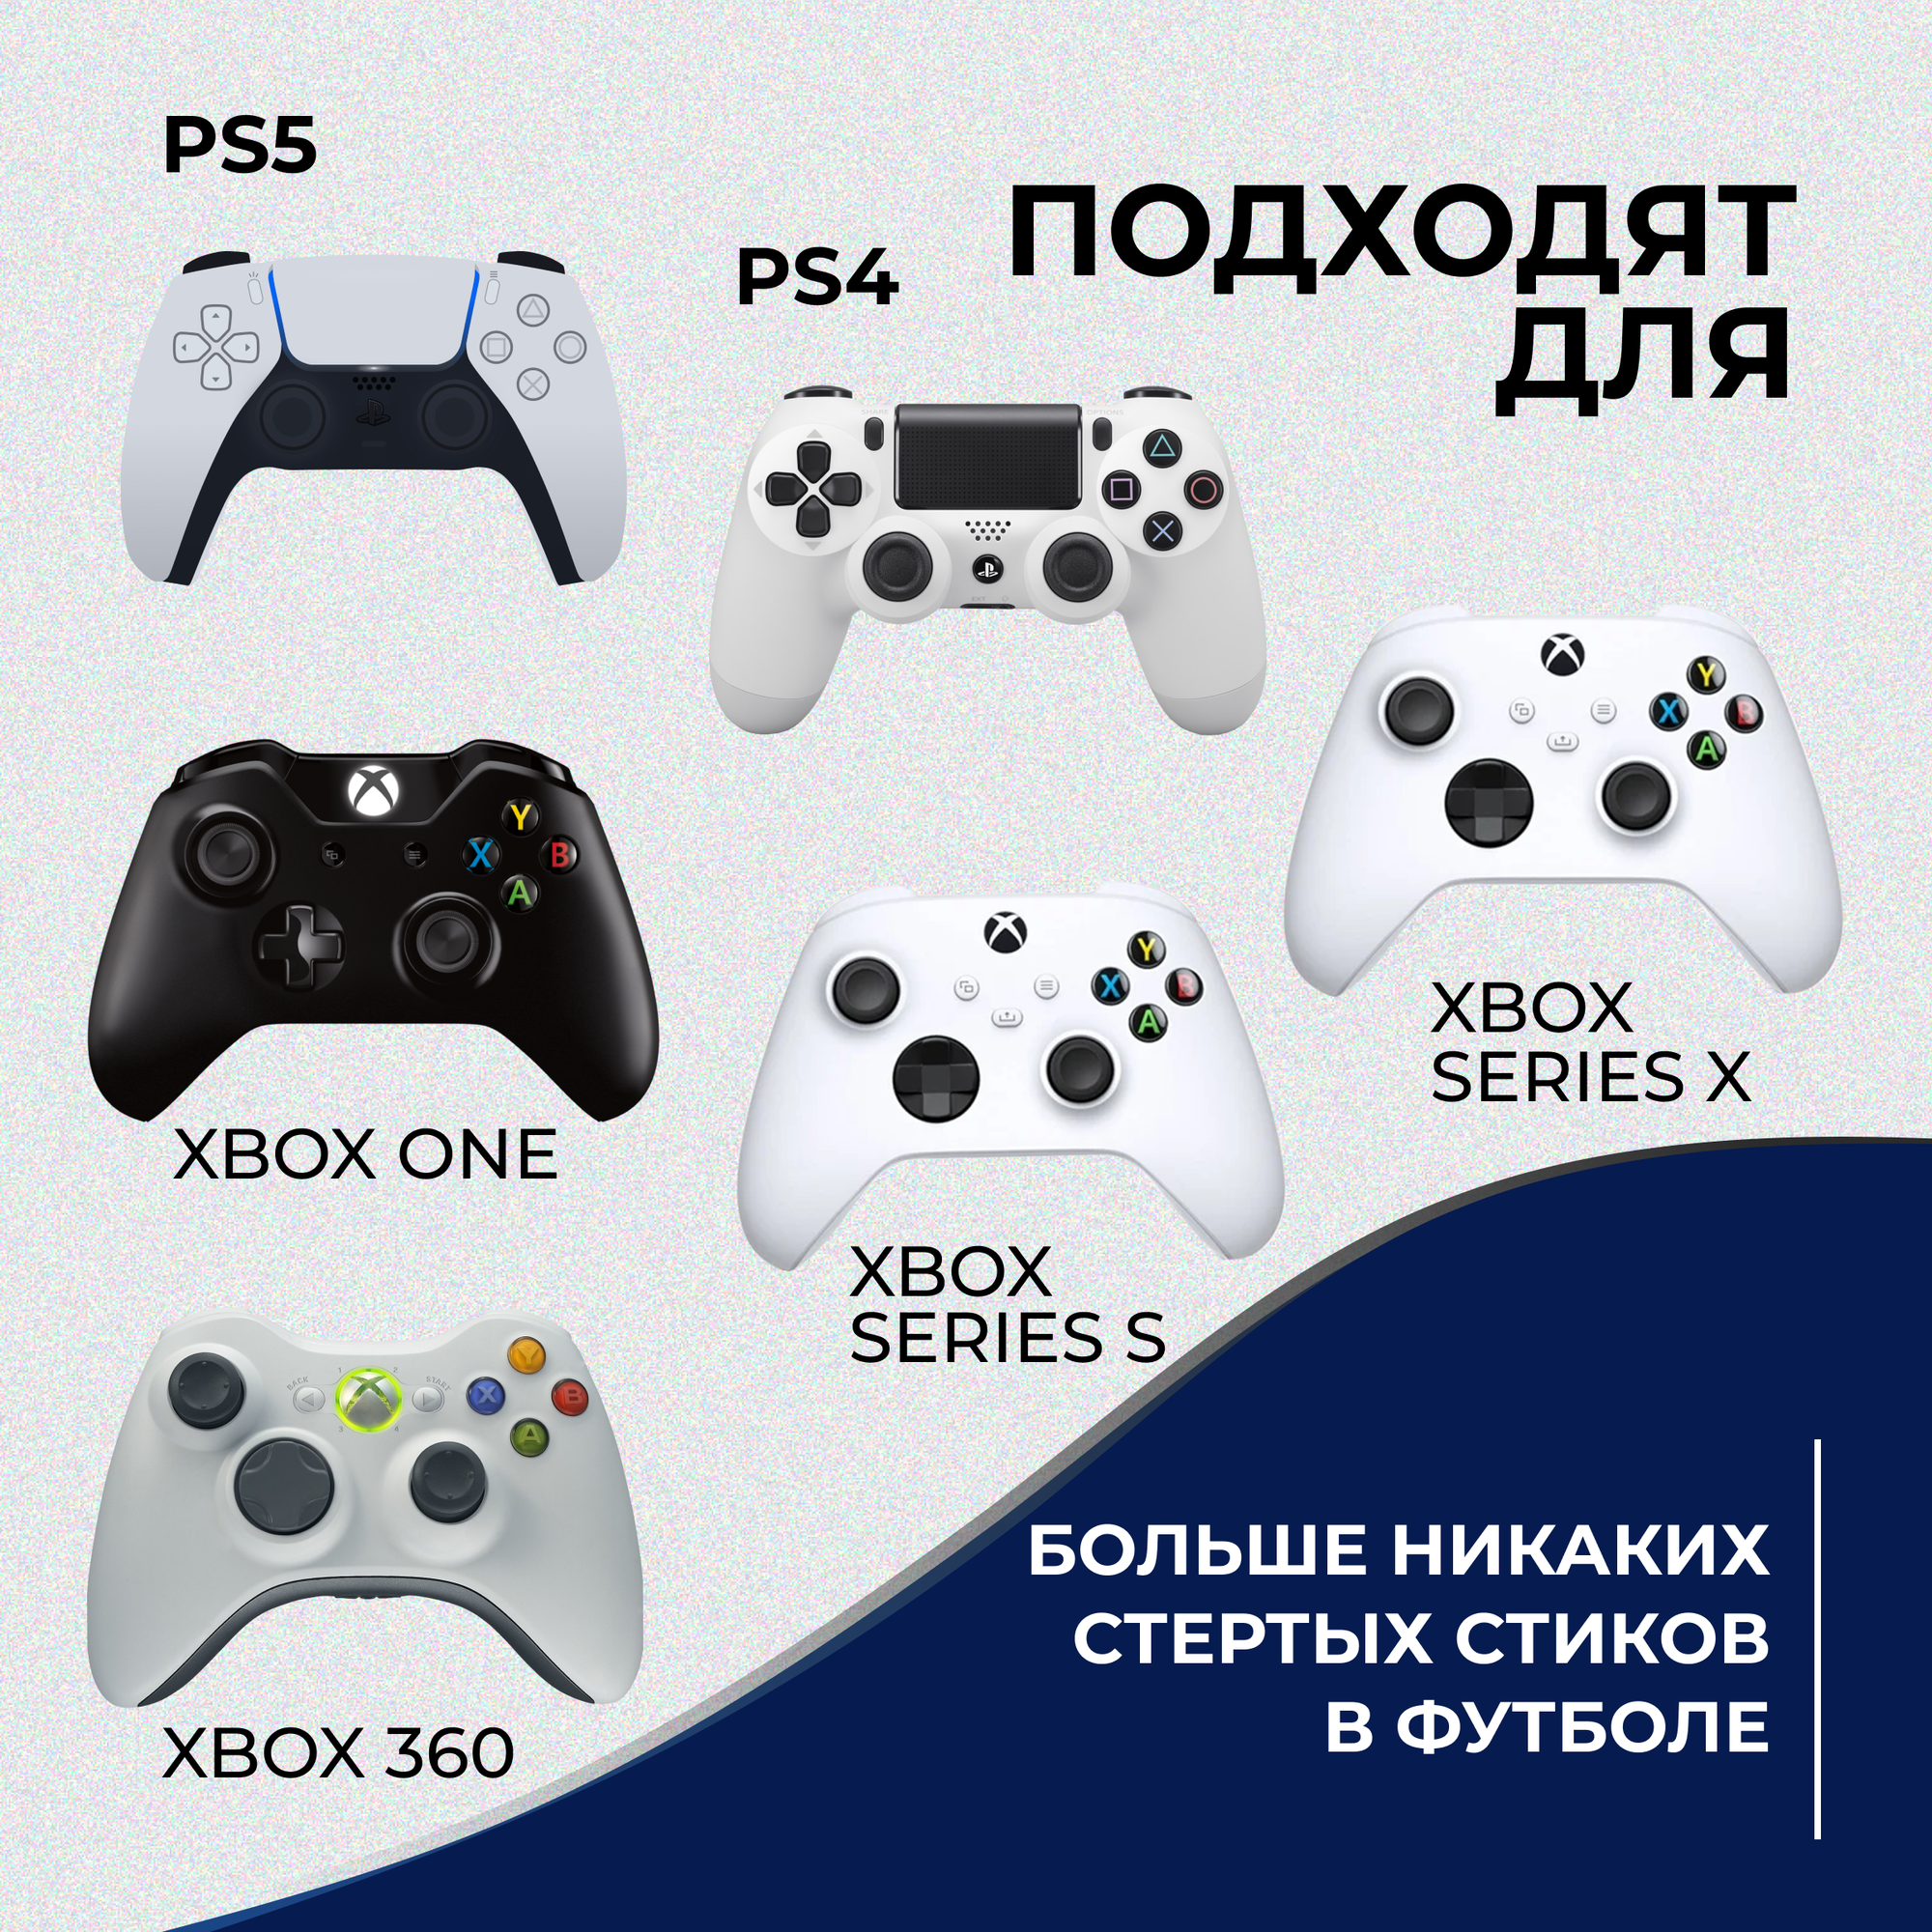 Накладки на стики для геймпада универсальные для PS5, PS4, PS3, XBOX Series, ONE, Xbox360, Switch Pro / 8 шт, черные